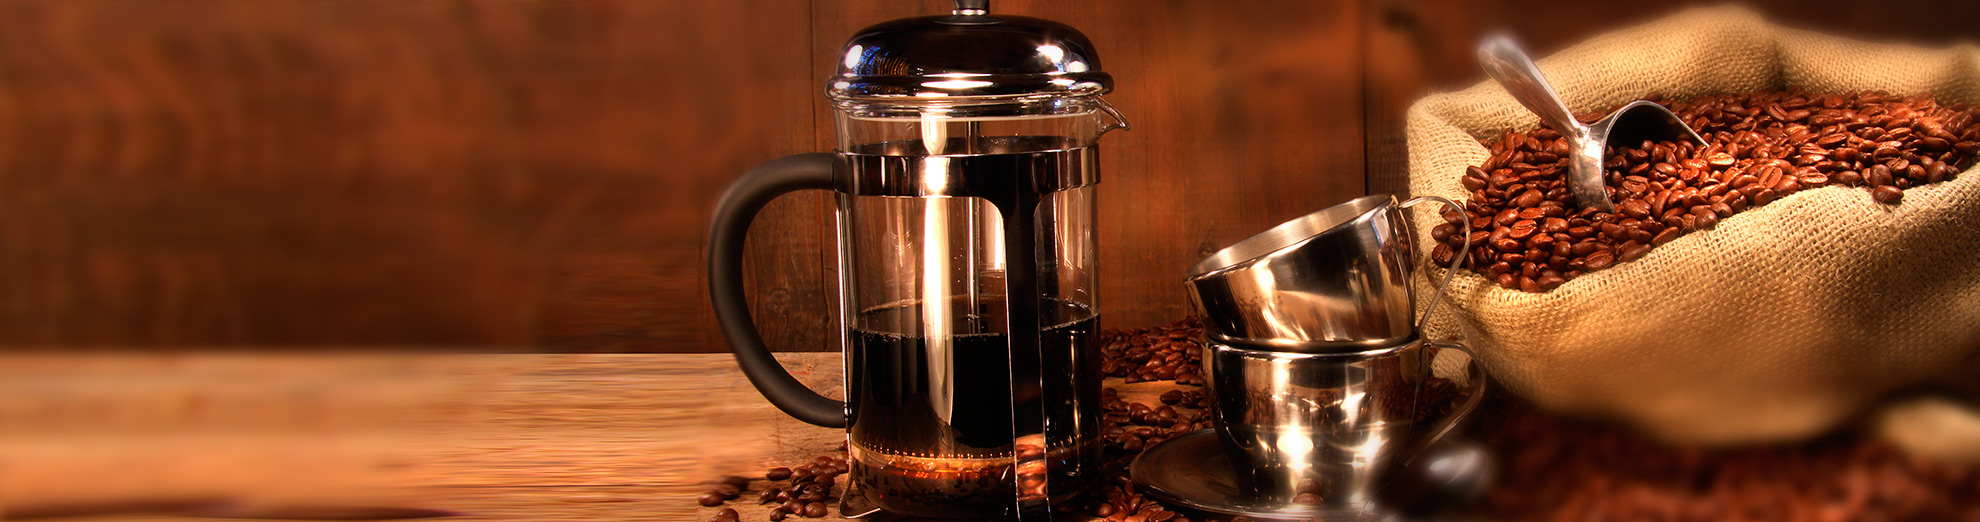 5 segreti per un caffè fatto in caffettiera pressa filtro